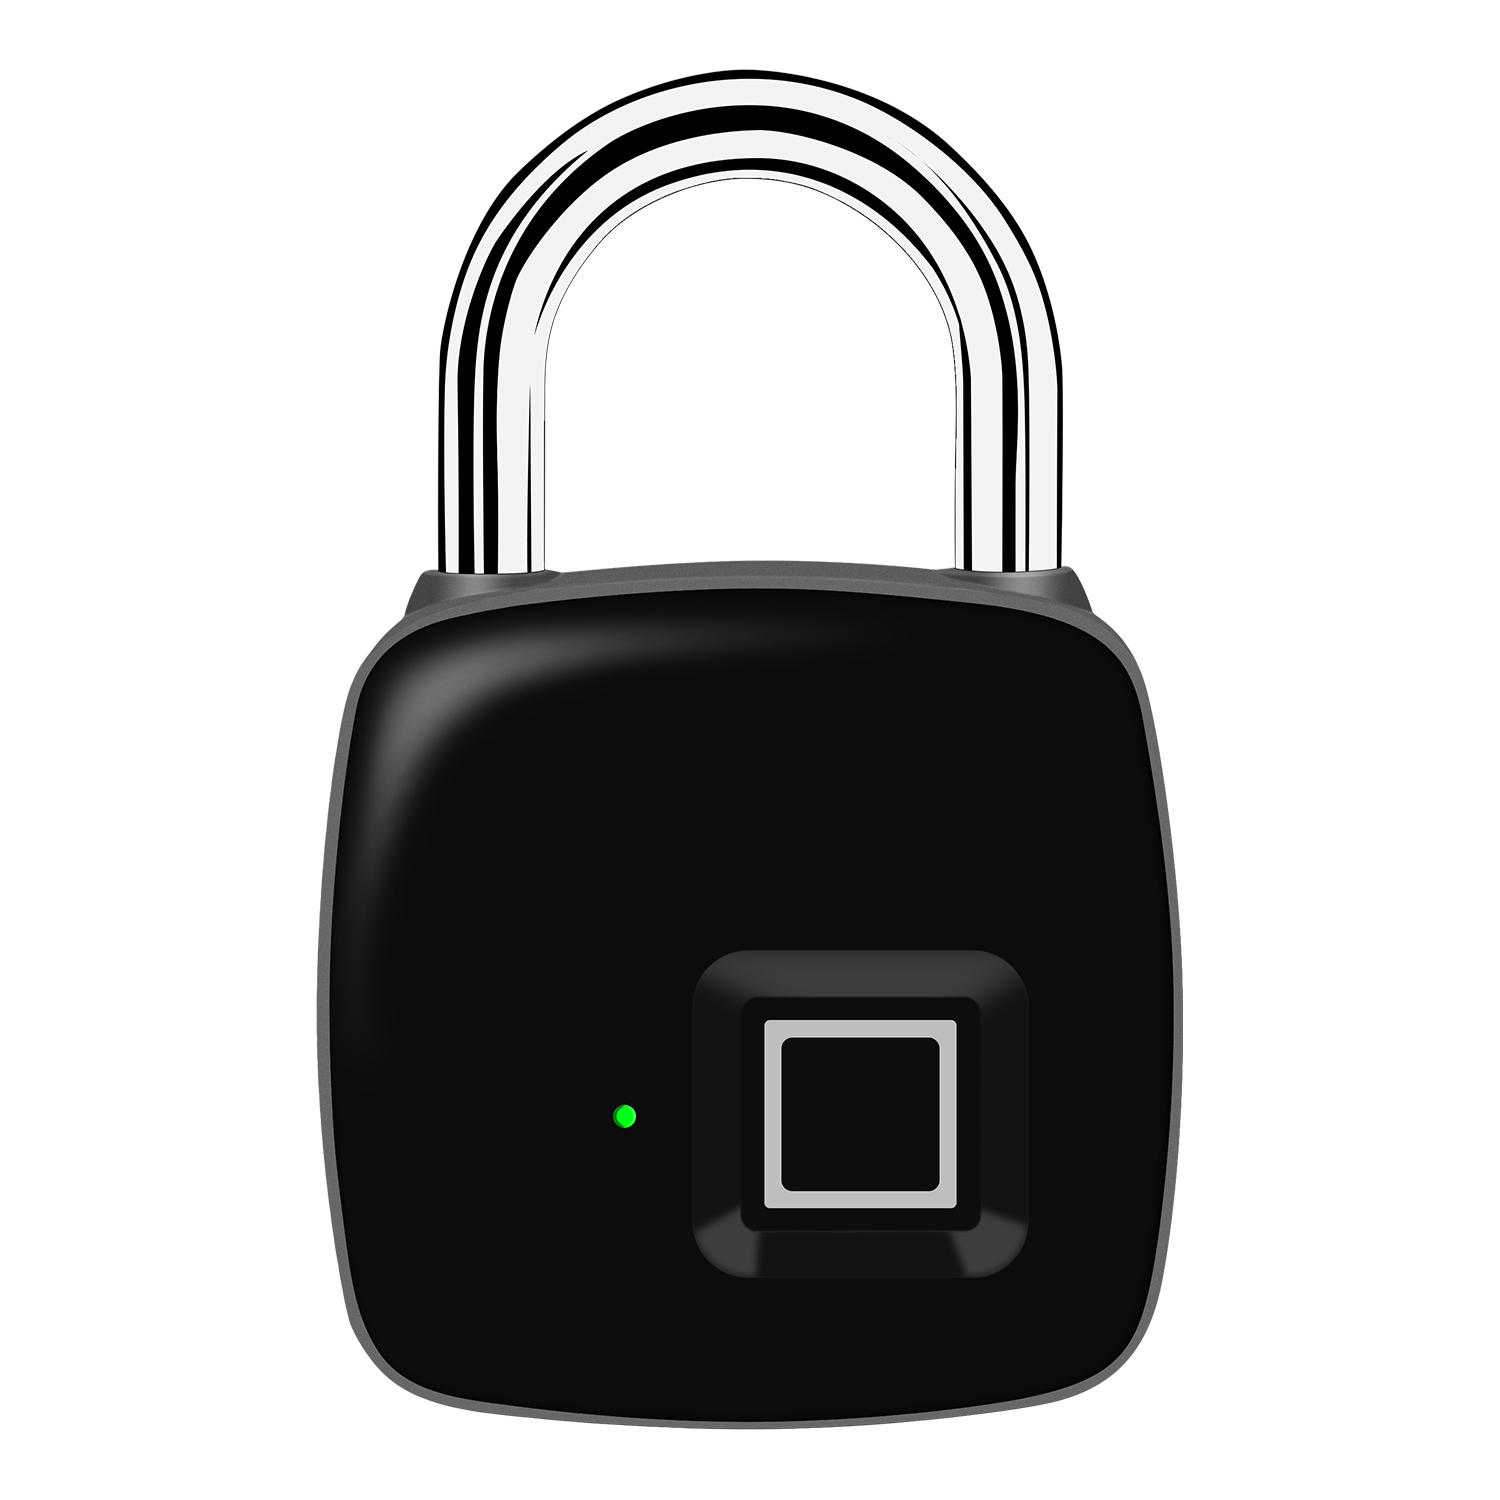 P3 + Smart Fingerprint Bluetooth Antirrobo Seguridad Recargable Equipaje Inicio Puerta electrónica cerradura Candado iOS